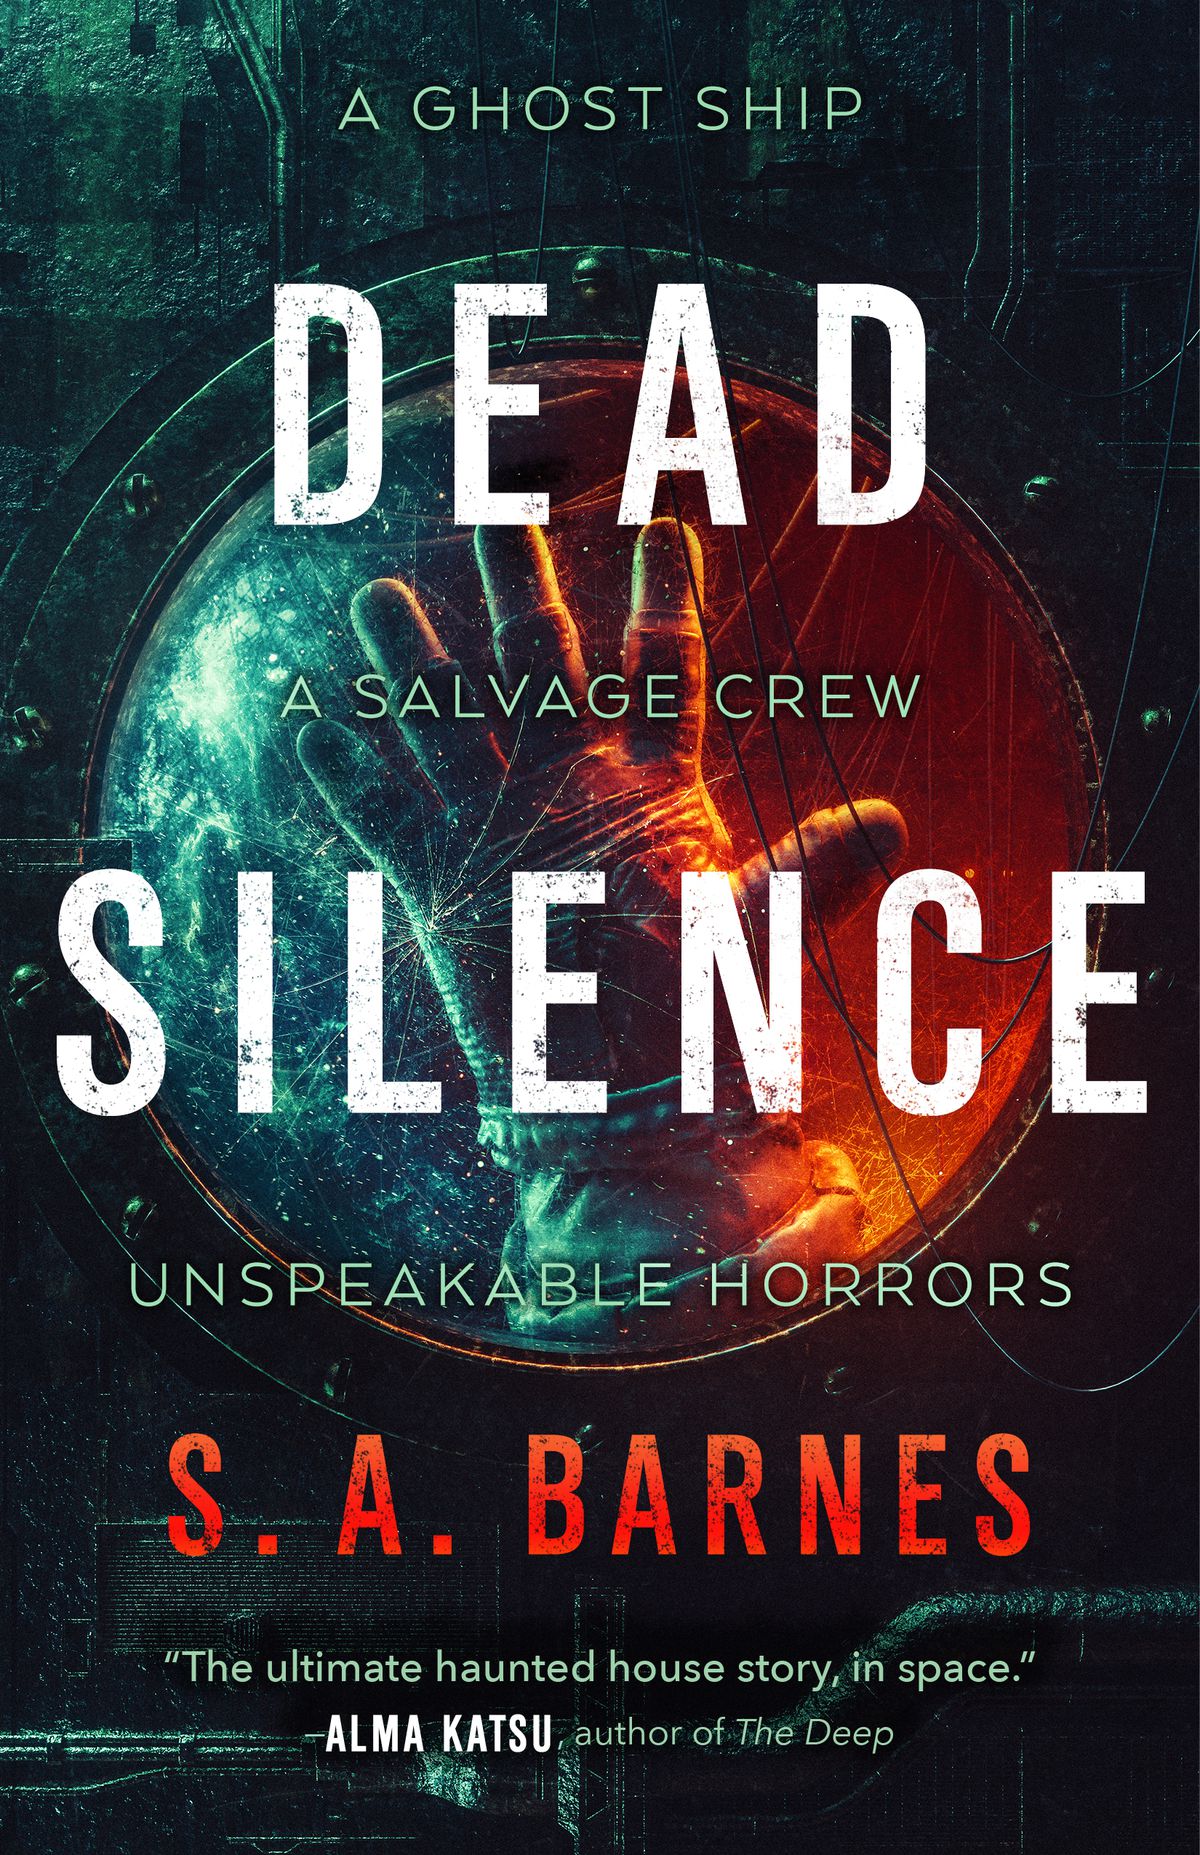 Immagine di copertina per il silenzio morto di SA Barnes, con una mano guantata dietro il finestrino rotto di un'astronave.  Il testo dice 